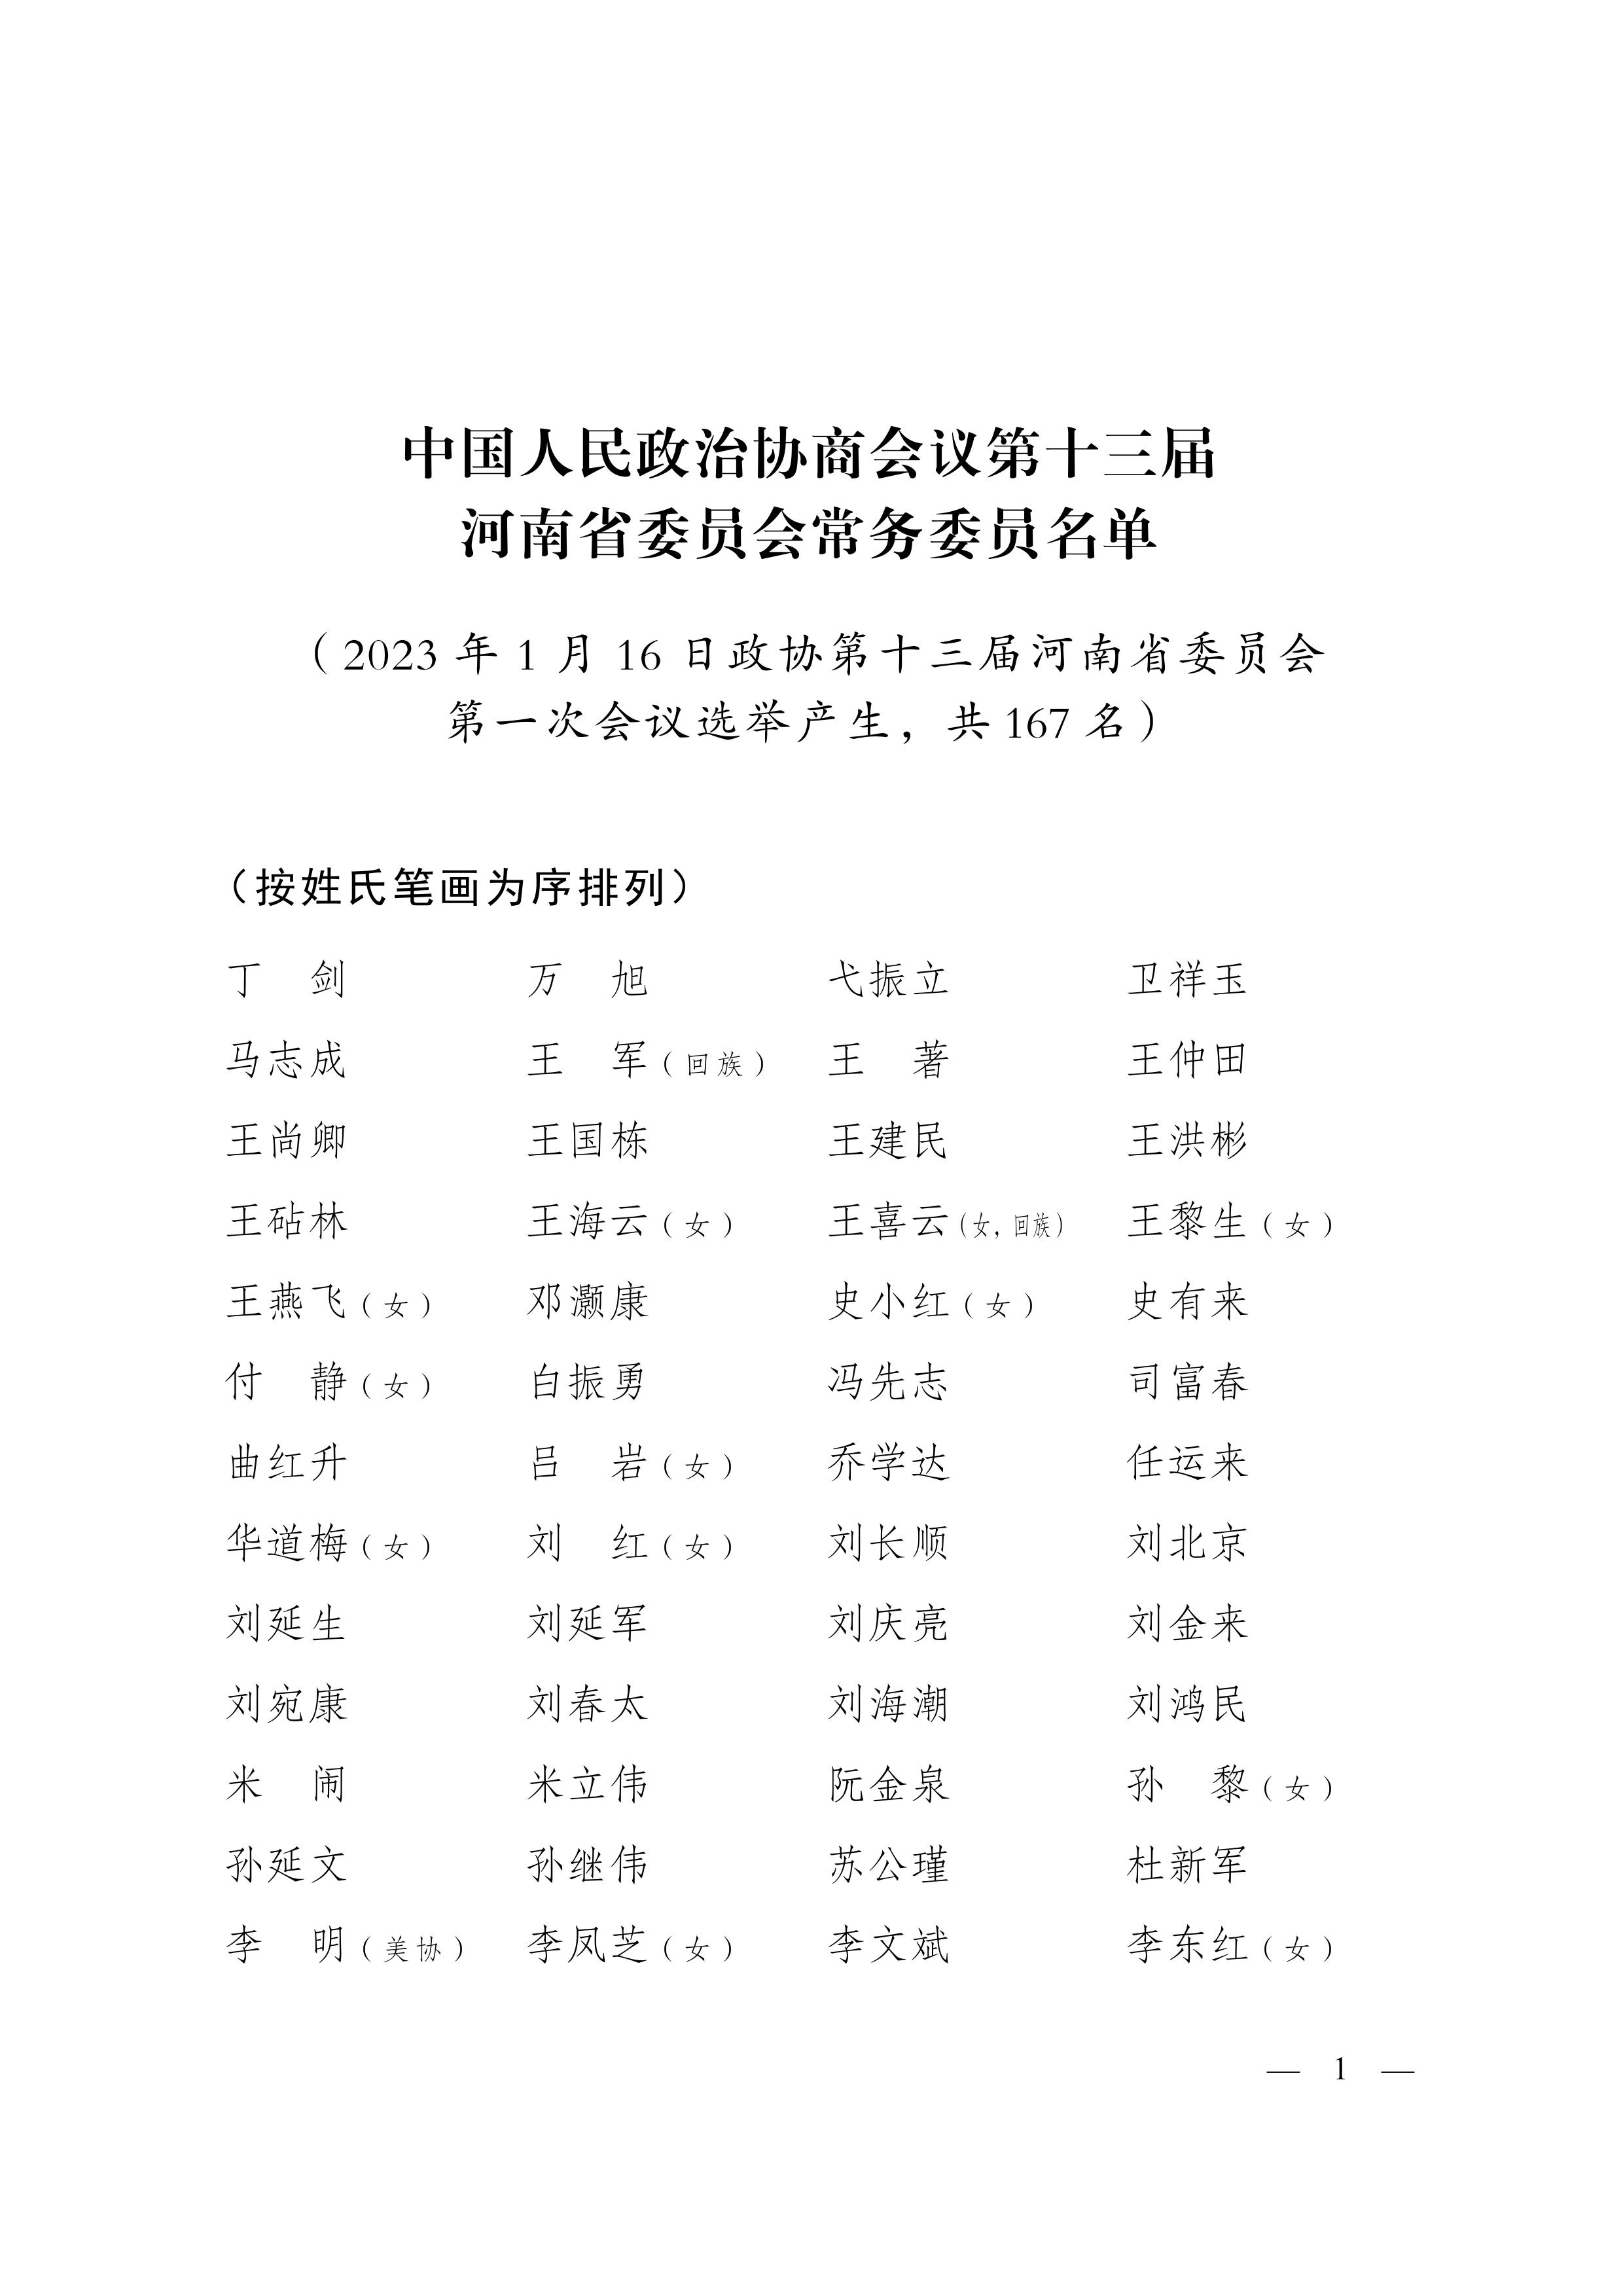 中国人民政治协商会议第十三届河南省委员会常务委员名单